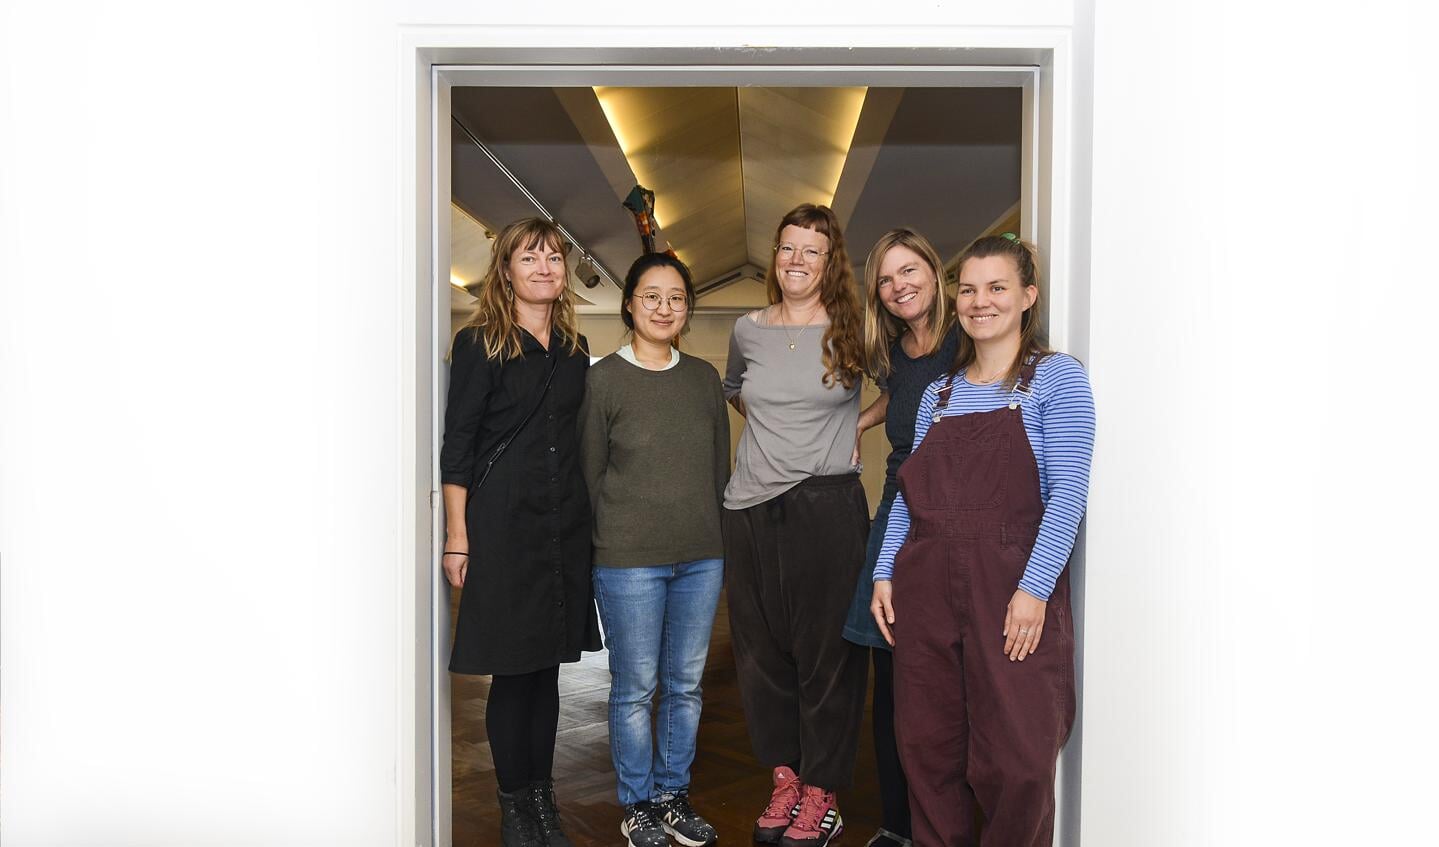 Fem af de seks udstillende kvinder. Fra venstre er det Tilde Lerche Engstrøm, Inkyong Lee, Ann Charlott Skogøy, Anne Lass og Anna Havskov Jensen. Fraværende var Maja Frendrup. Foto: